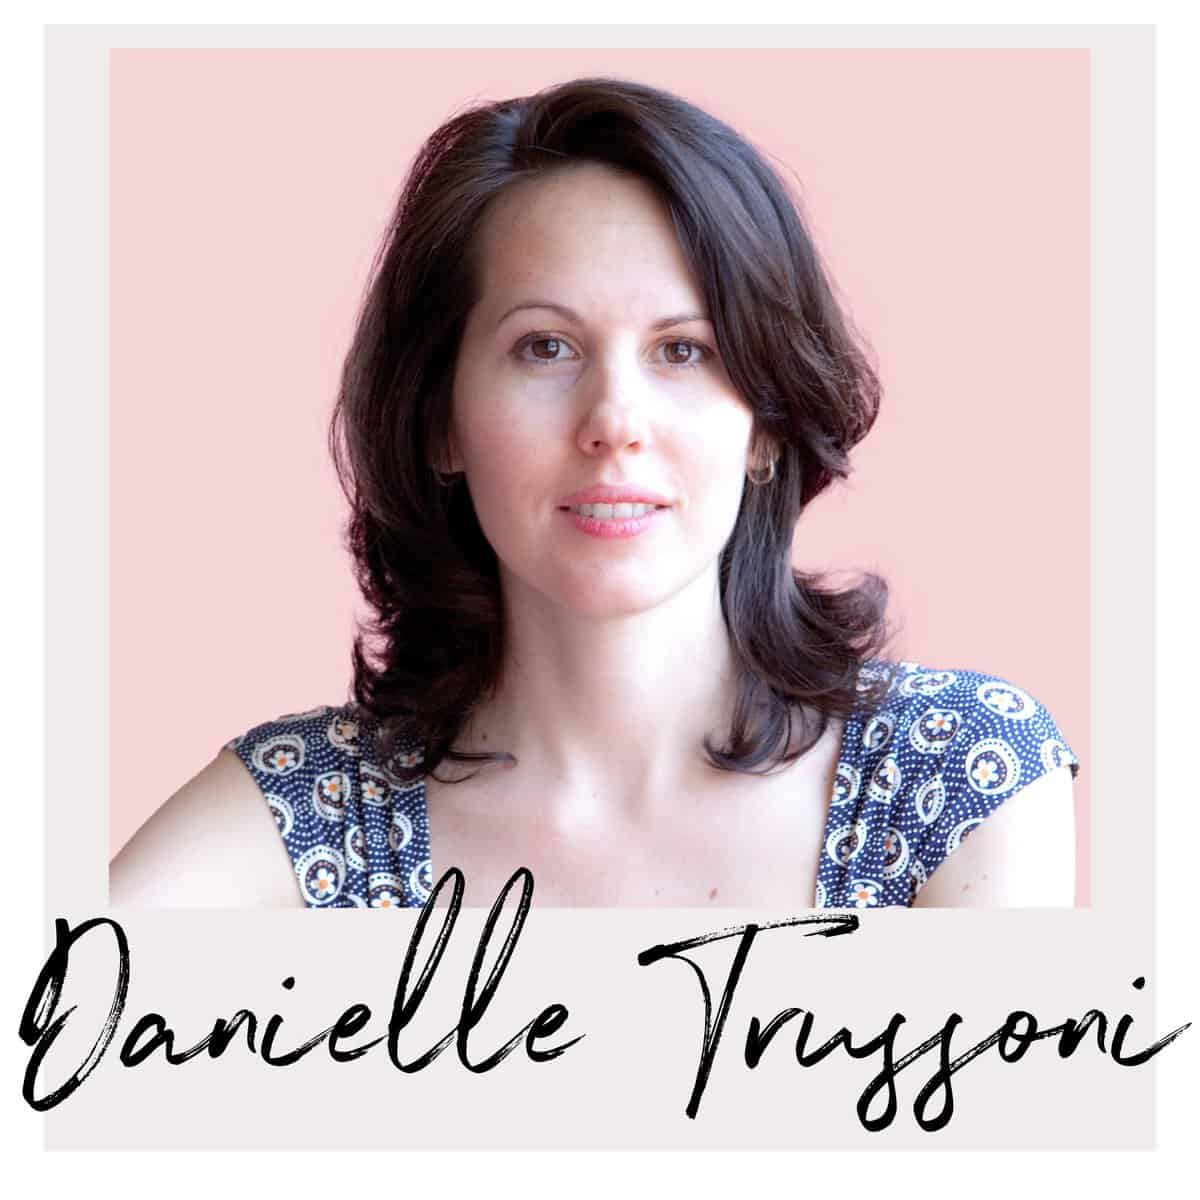 author Danielle Trussoni